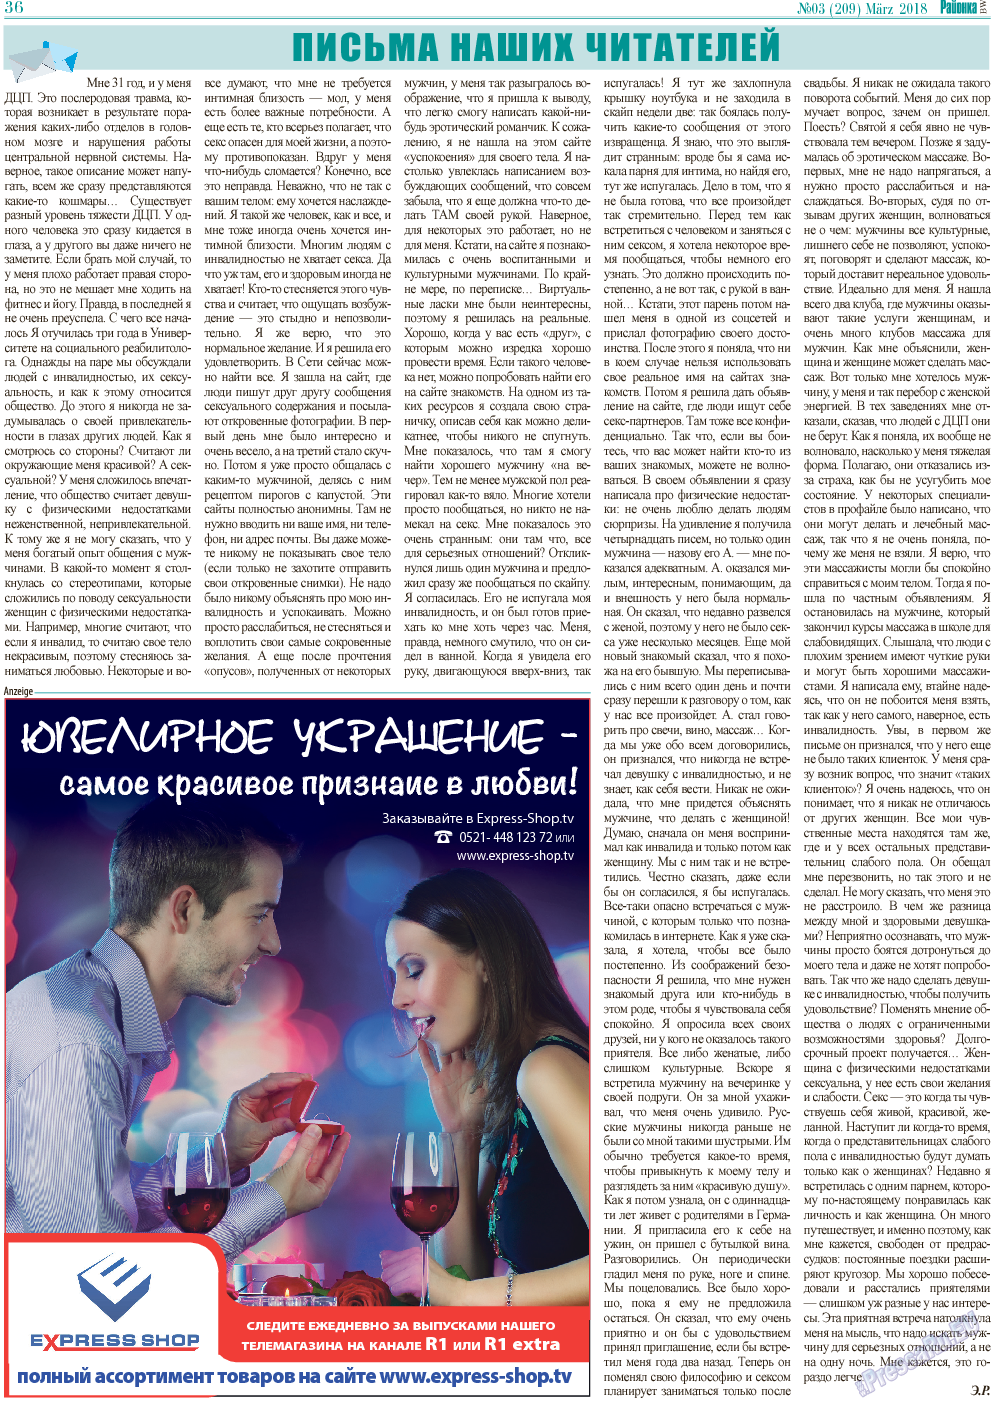 Районка-West (газета). 2018 год, номер 3, стр. 36